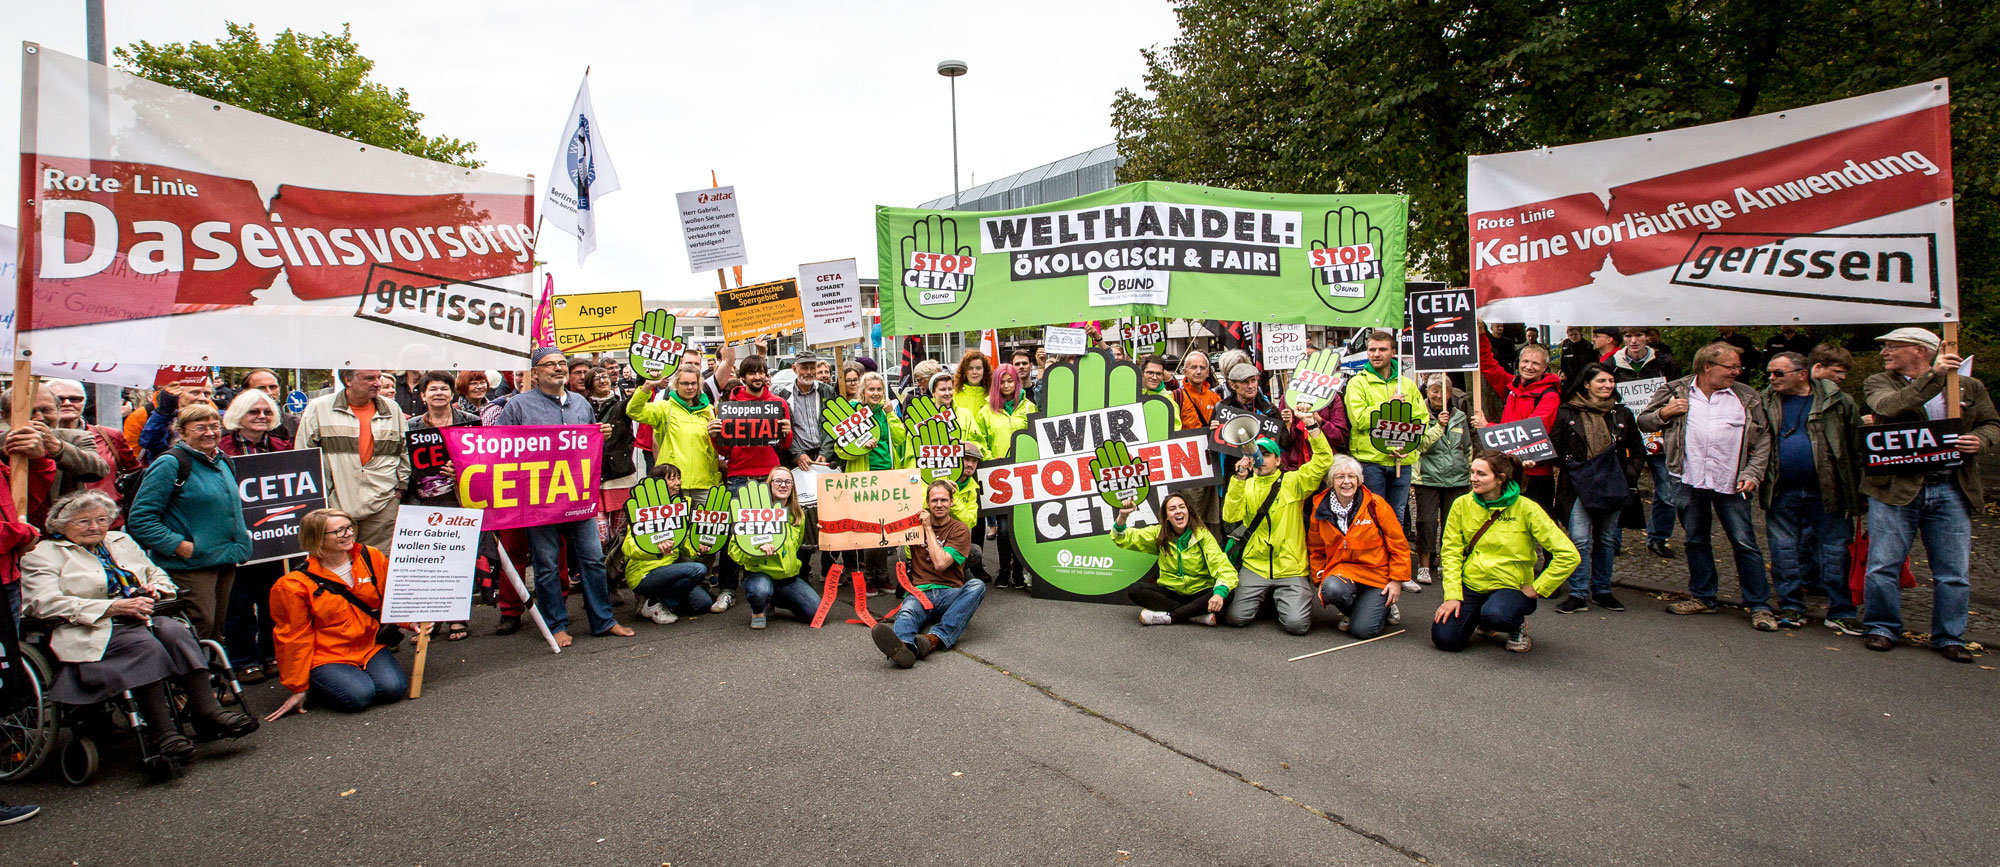 STOPP-CETA-Aktion zum SPD-Parteikonvent September 2017 in Wolfsburg